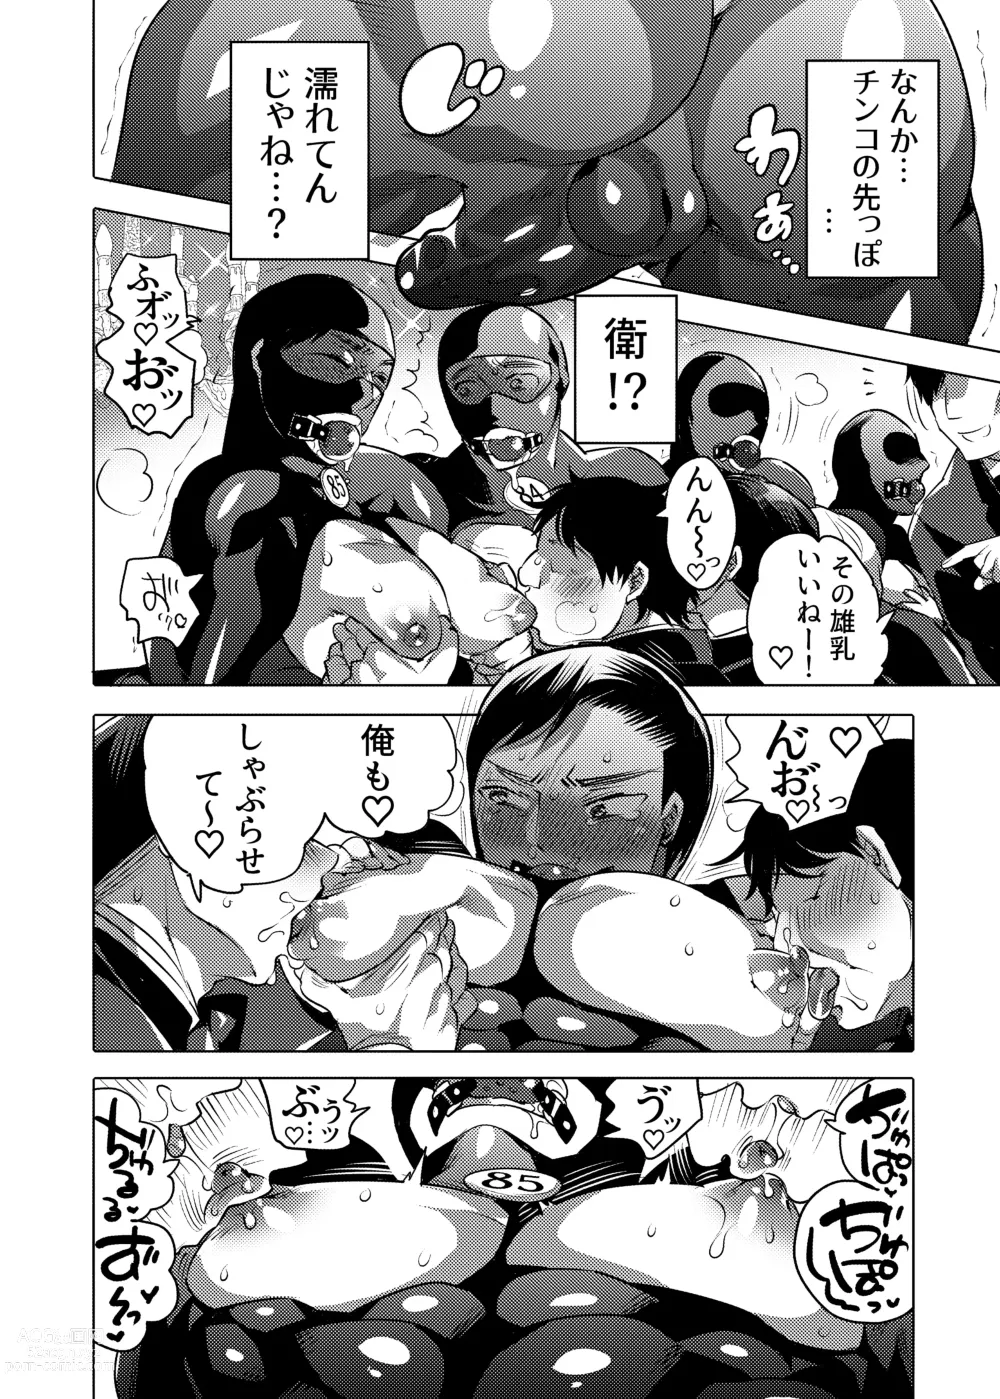 Page 8 of doujinshi Ochichi Hinpyoukai